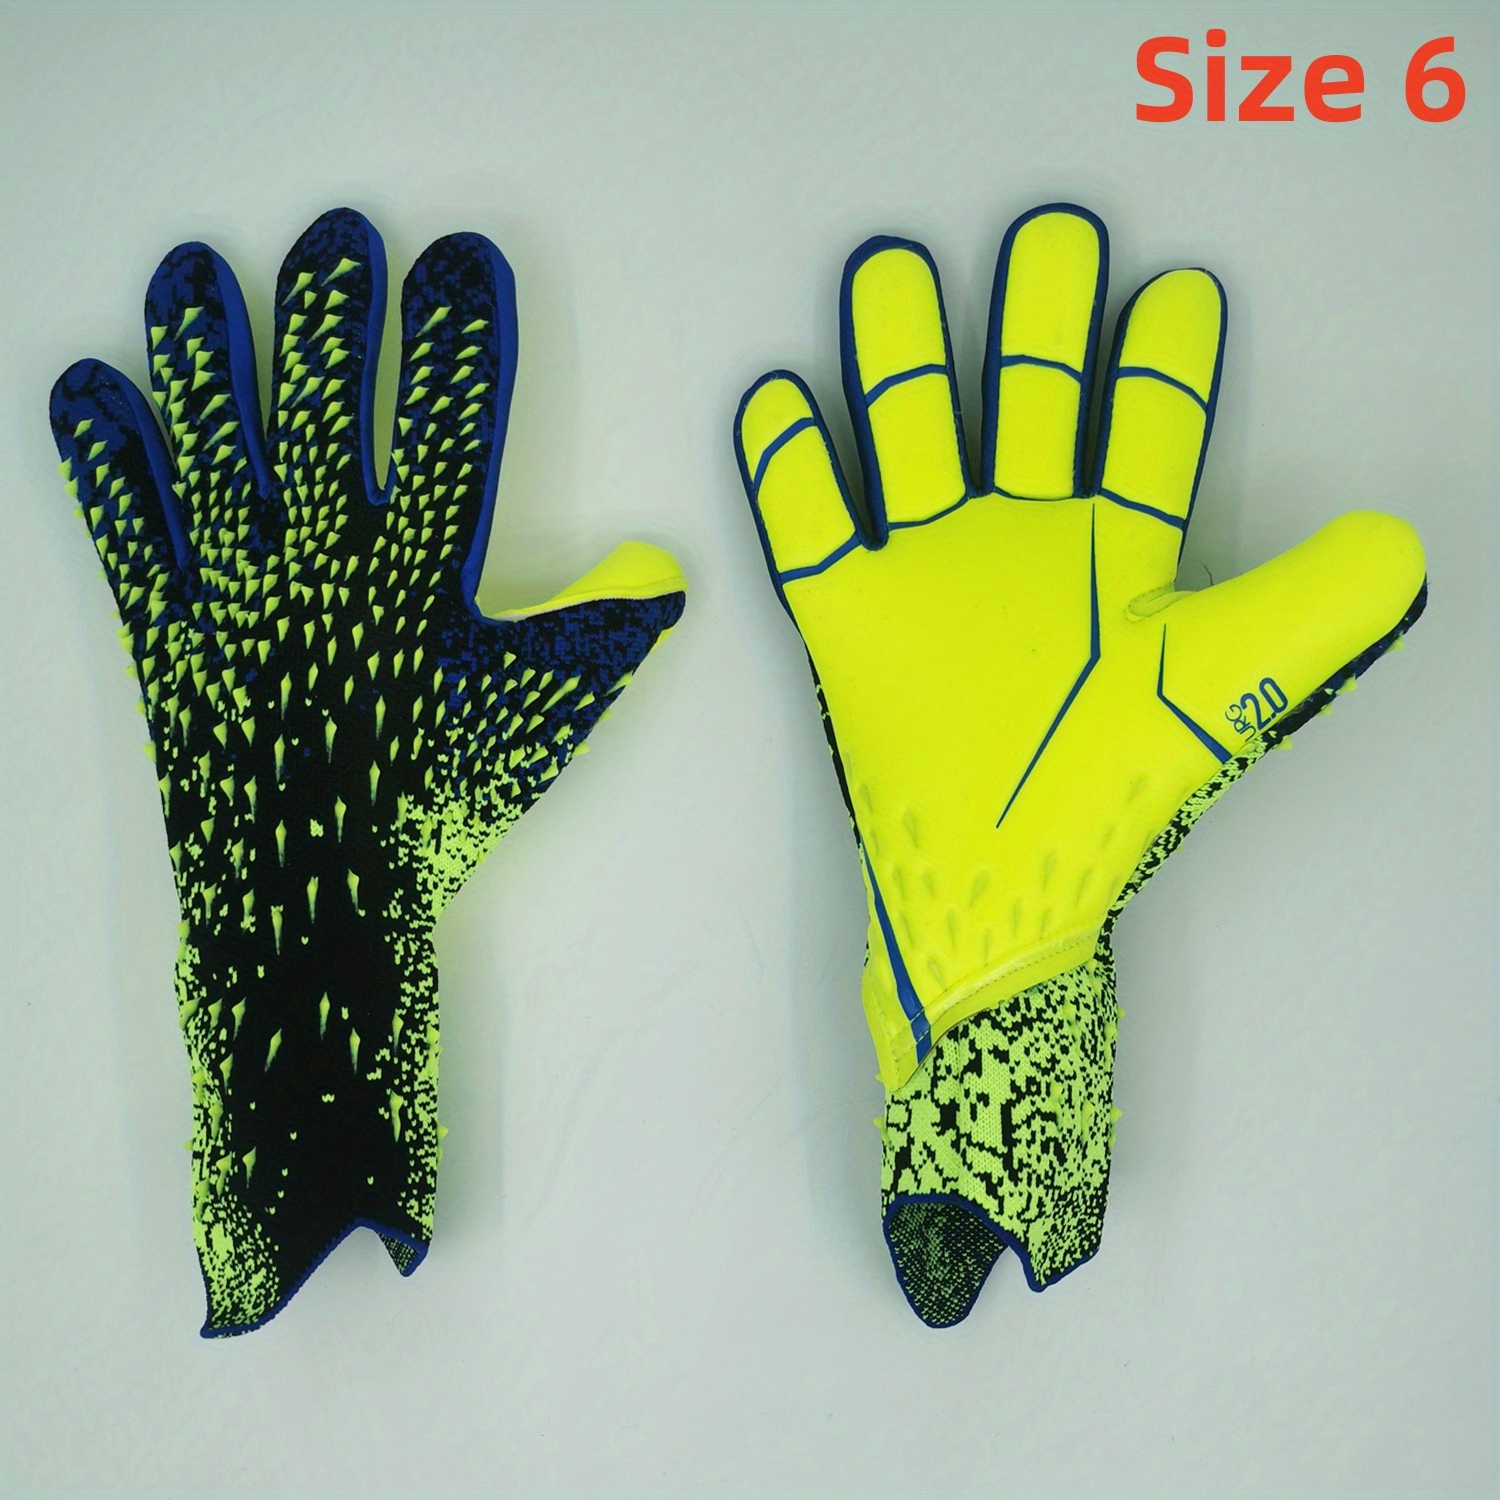  ZJDU Guantes de fútbol de látex, guantes de portero de fútbol  gruesos, guantes de portero con dedo, látex antideslizante, resistentes al  desgaste, para adultos y estudiantes (color azul, tamaño: 10) 